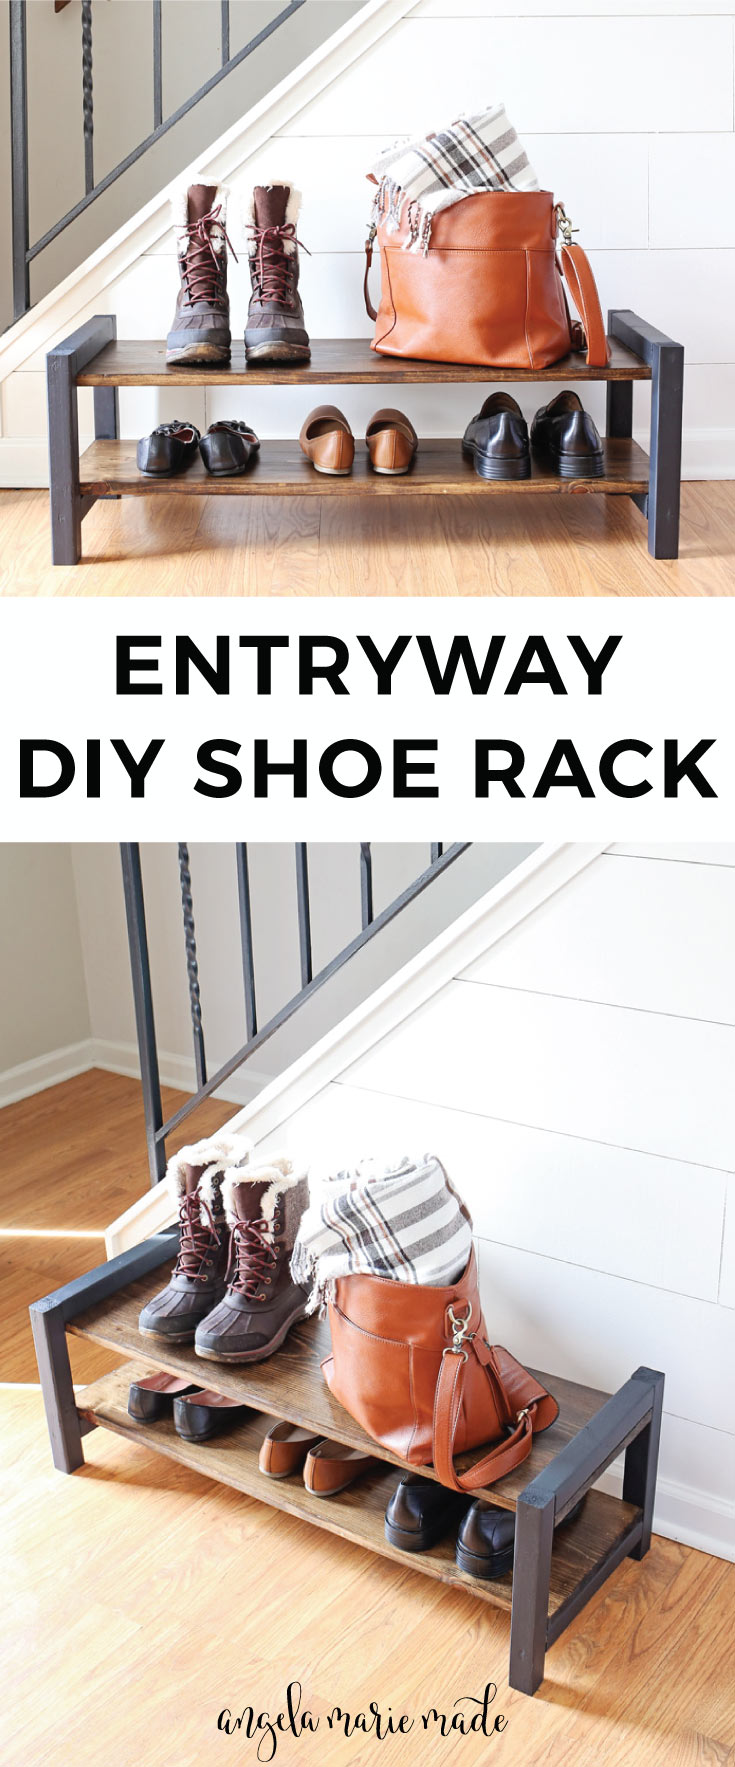 Entryway DIY Shoe Rack - Entryway DIY Shoe Rack -   19 diy Muebles zapatos ideas